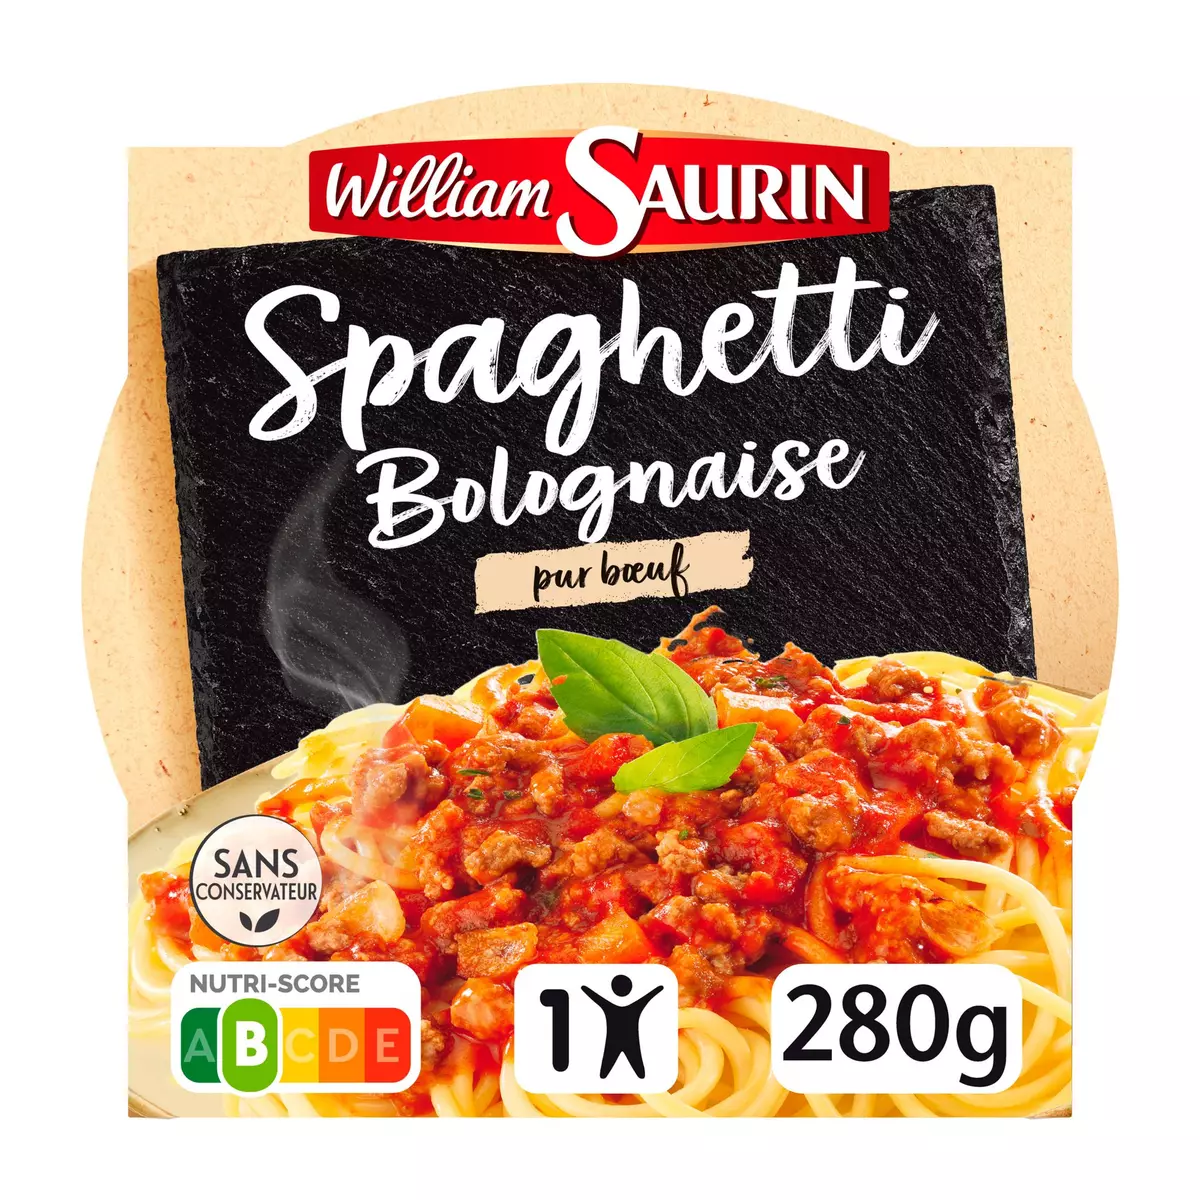 WILLIAM SAURIN Spaghetti bolognaise pur boeuf barquette 1 portion 280g